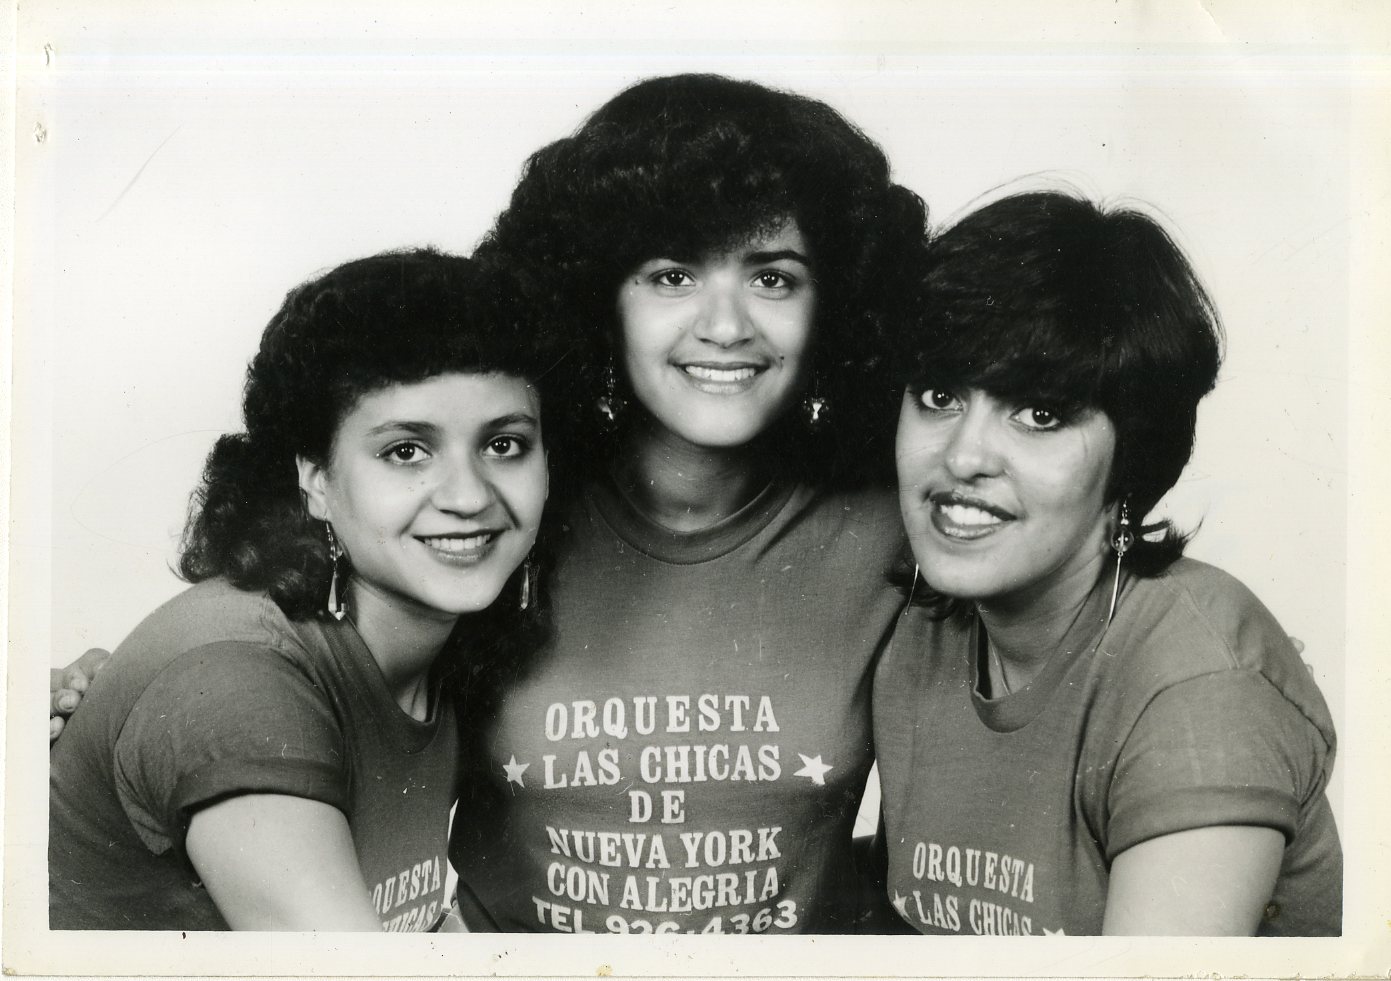 Las Chicas de Nueva York, ca. 1980s